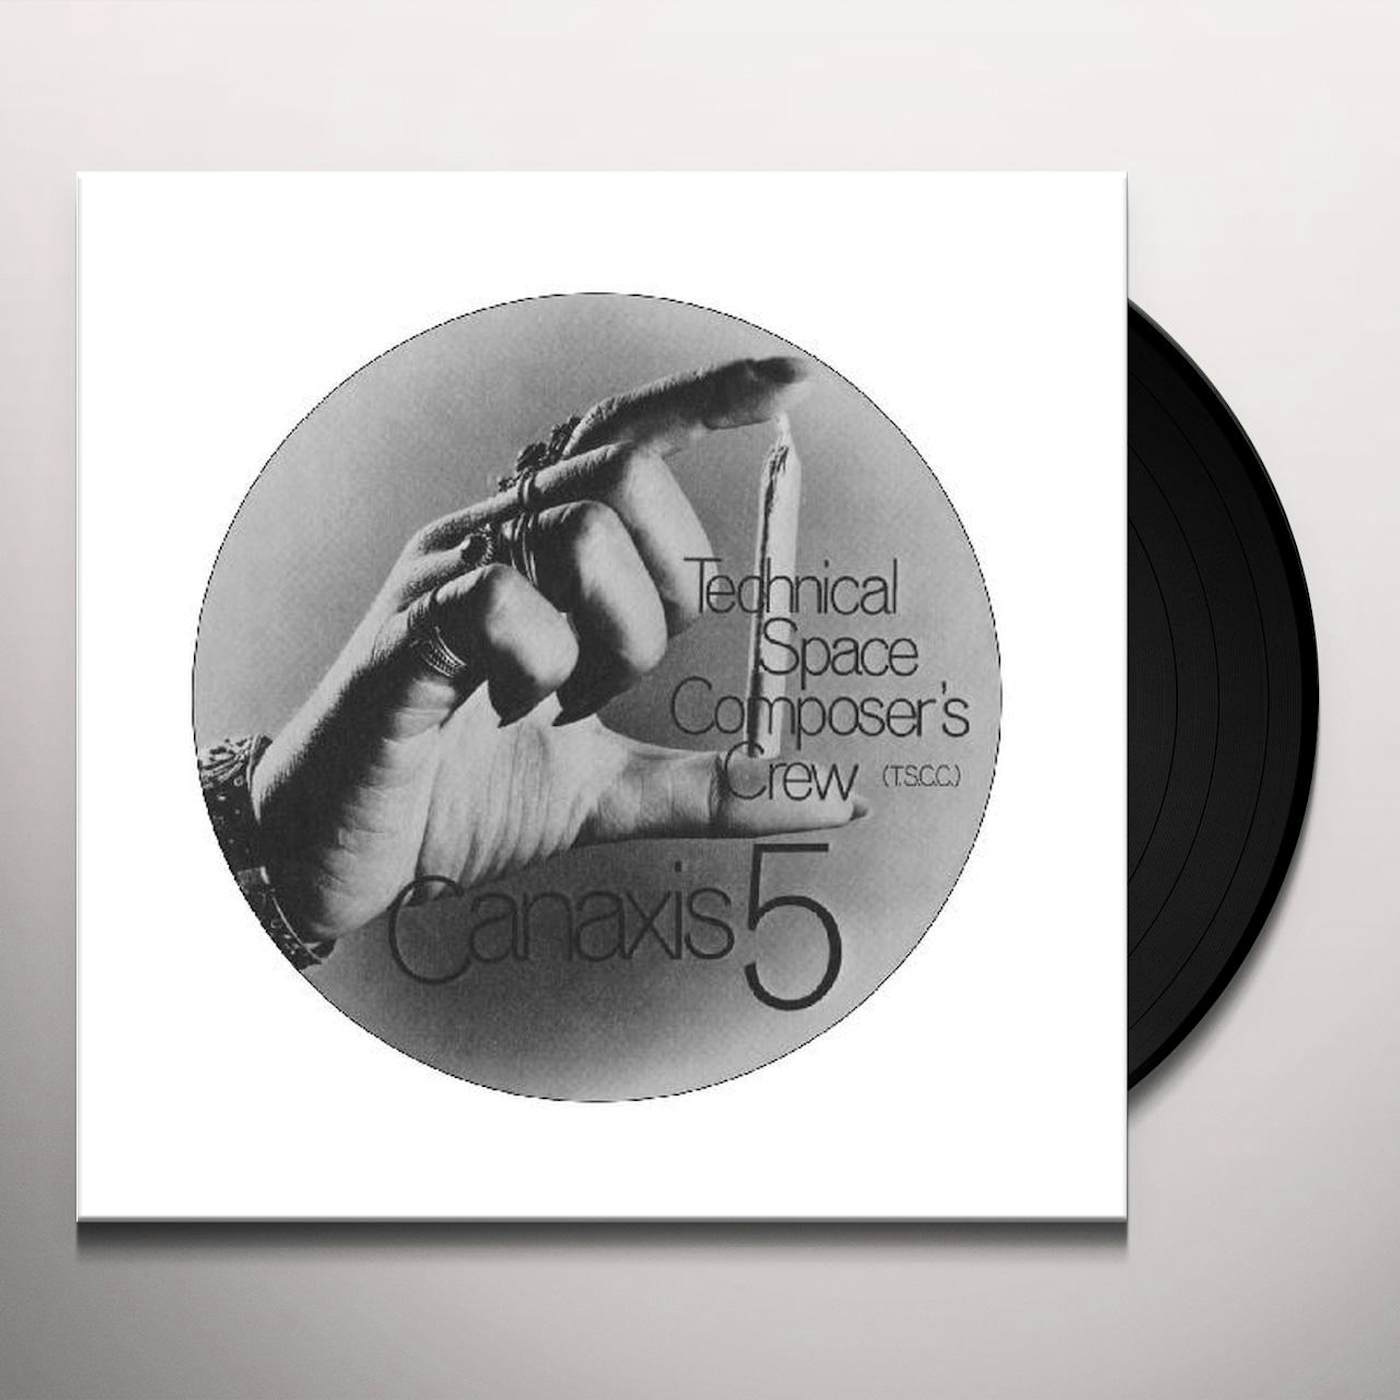 Technical Space Composer`s Crew Canaxis 5 Vinyl Record